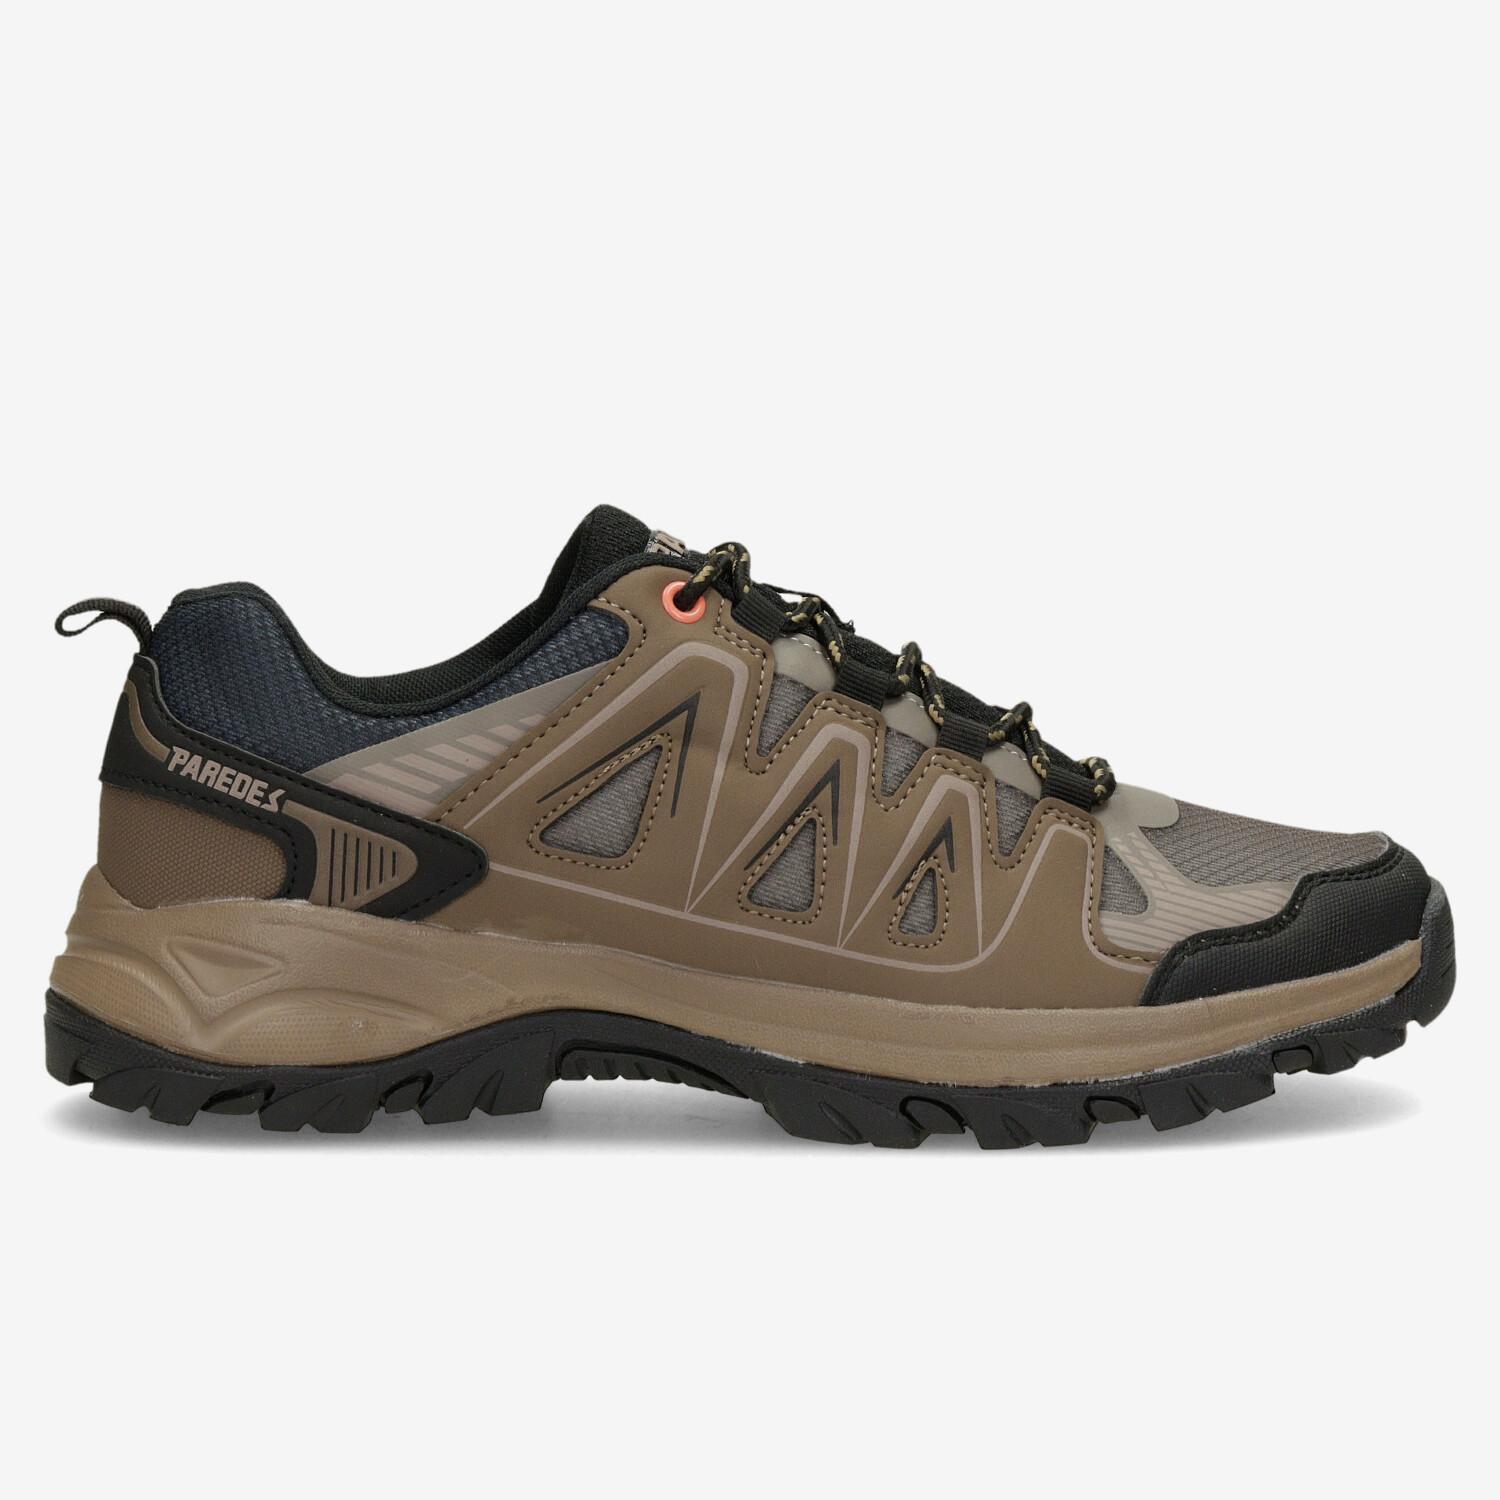 Paredes Trevelez - Marron - Chaussures de randonnée homme sports taille 40